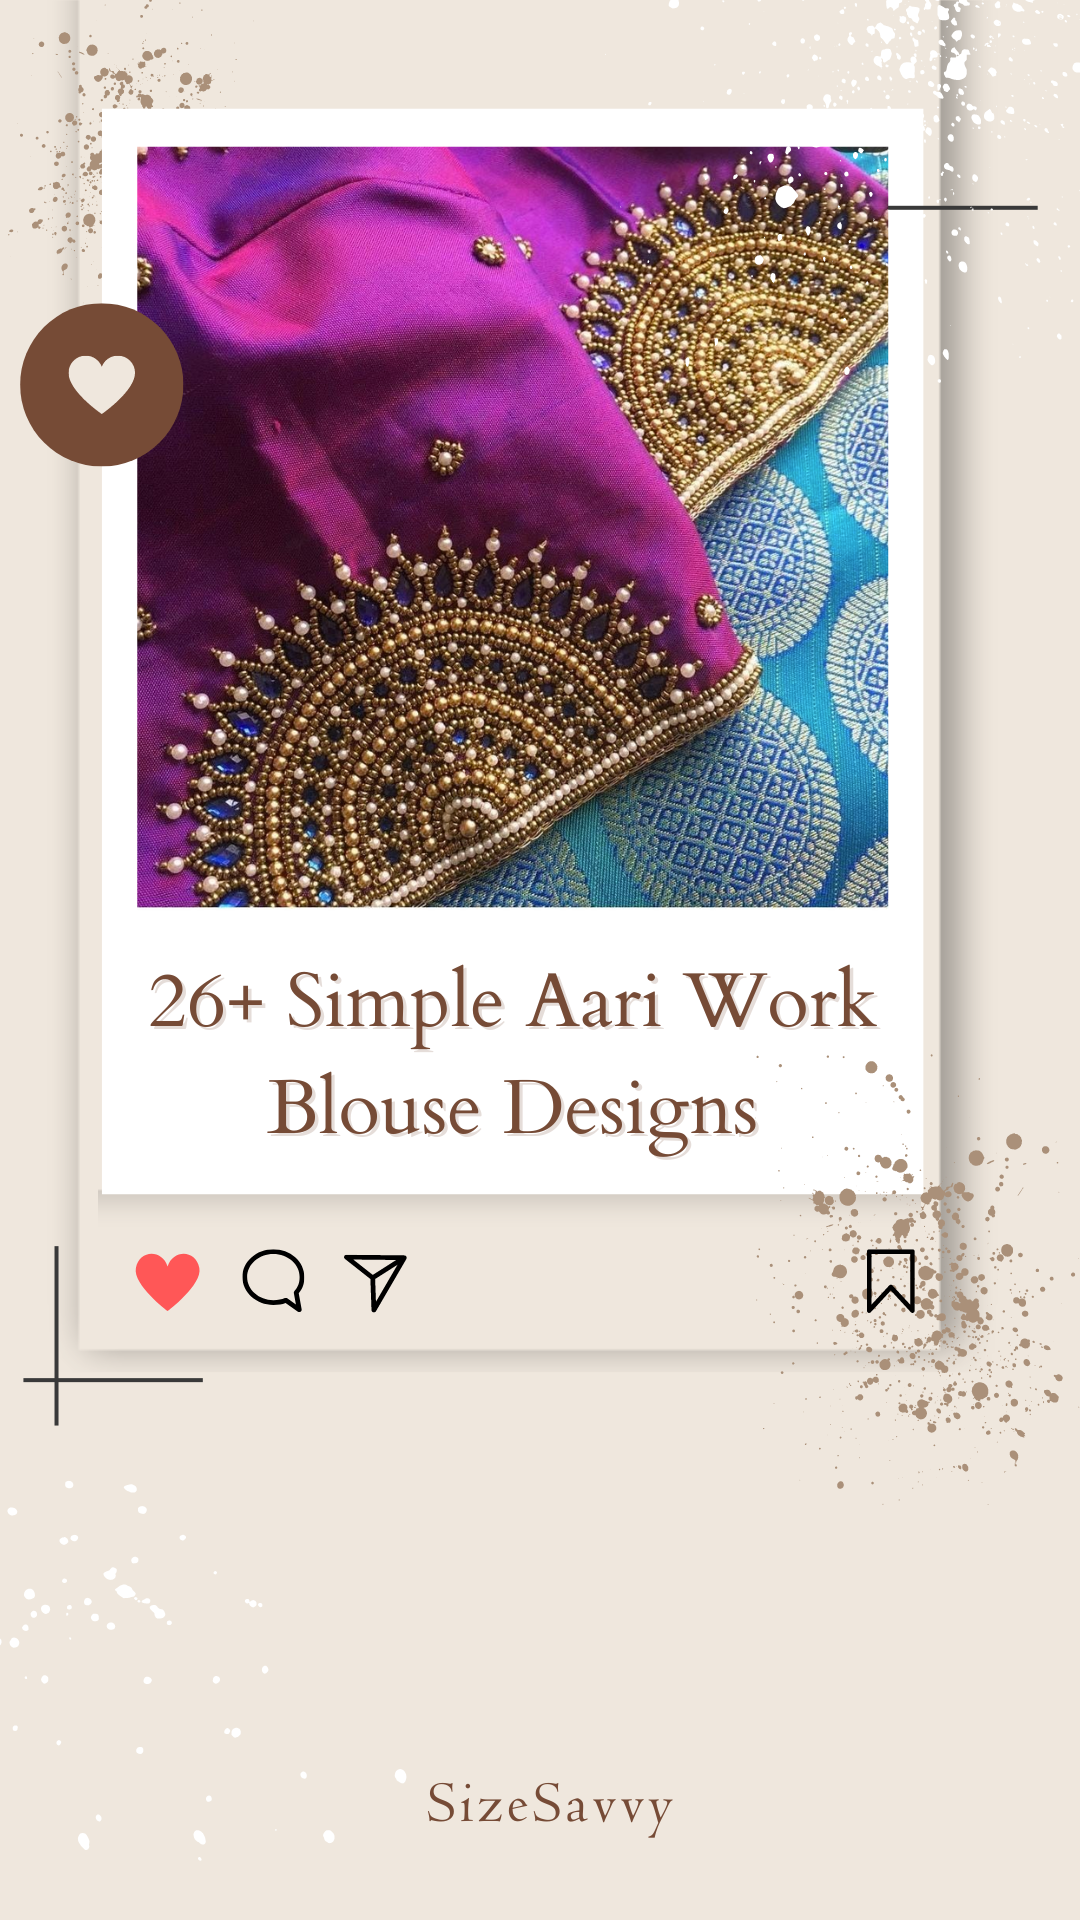 Blouse work designs for pattu sarees - Sareeing.com